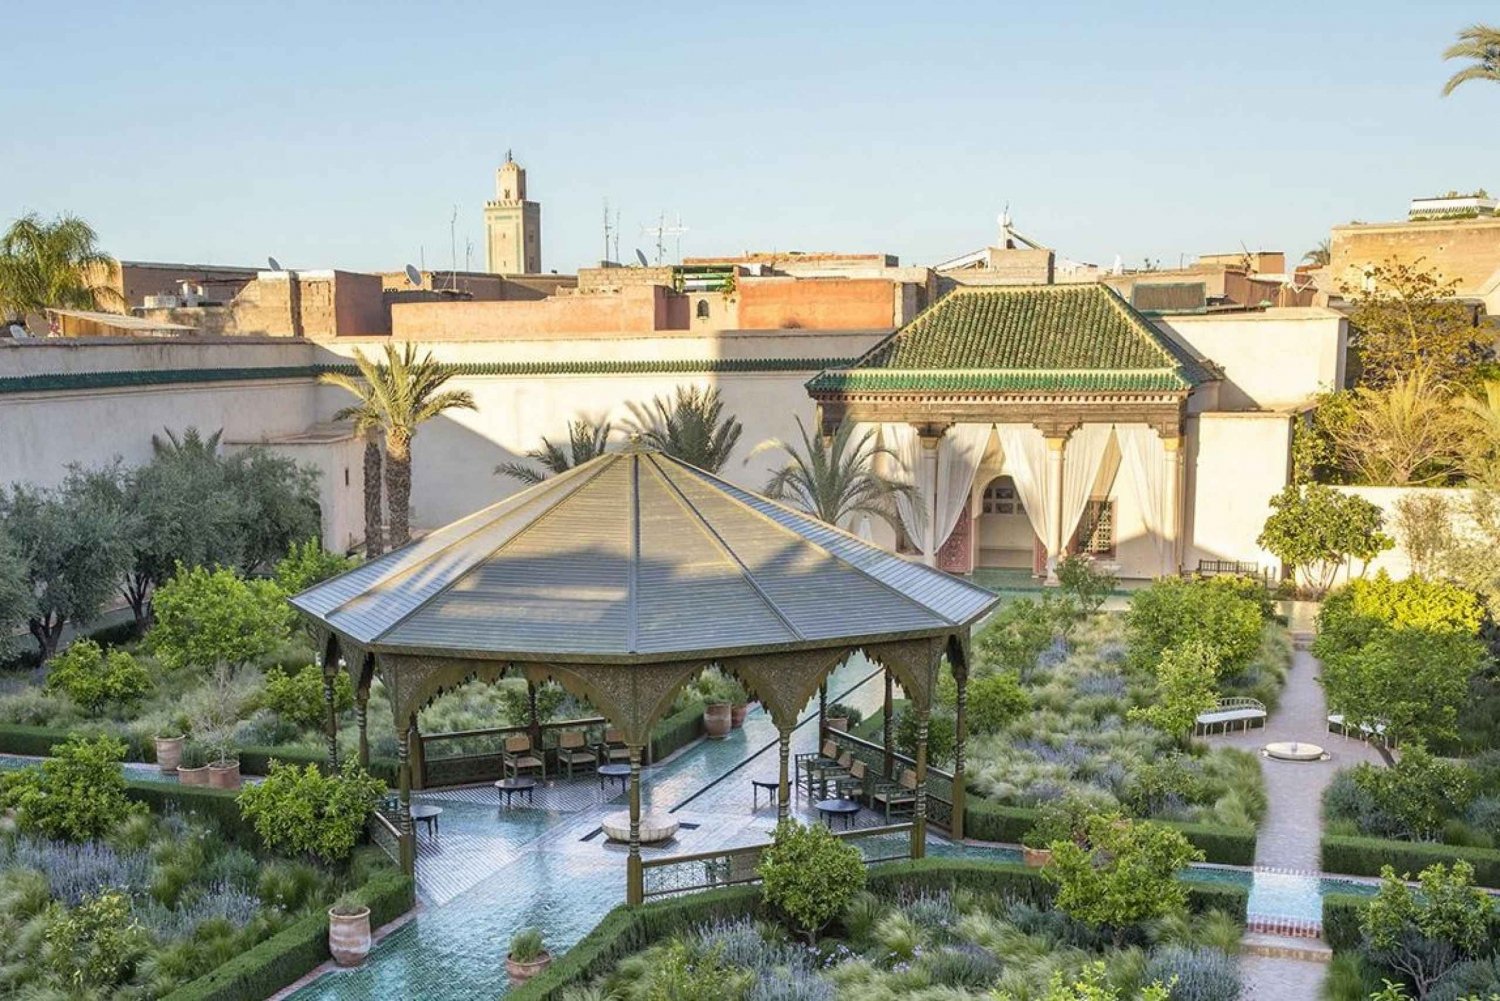 Marrakech: Ben Youssef Madrasa, hemlig trädgård och Medina Tour